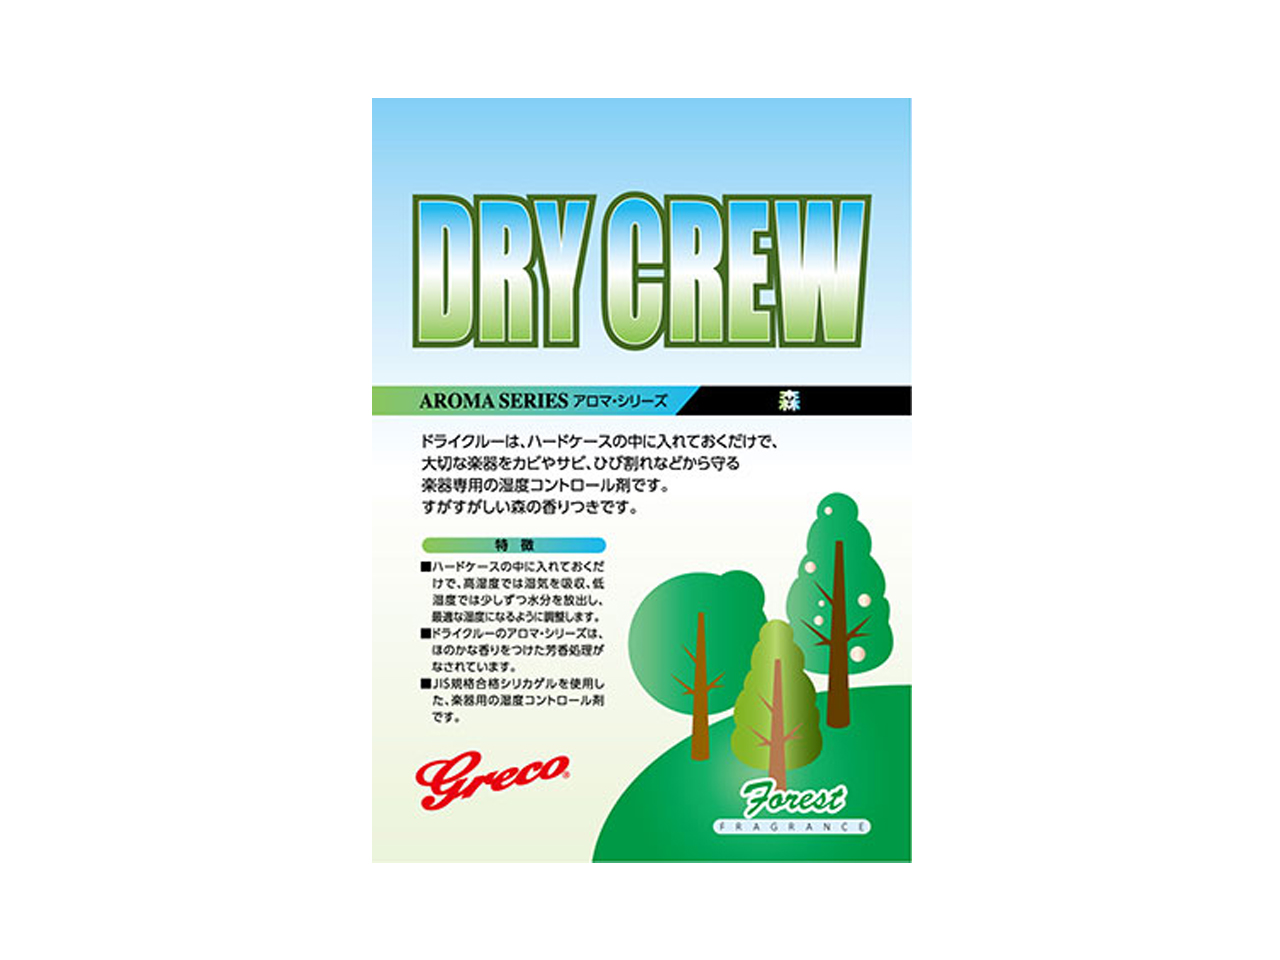 Greco(グレコ) Dry Crew / 森 (湿度調整剤)